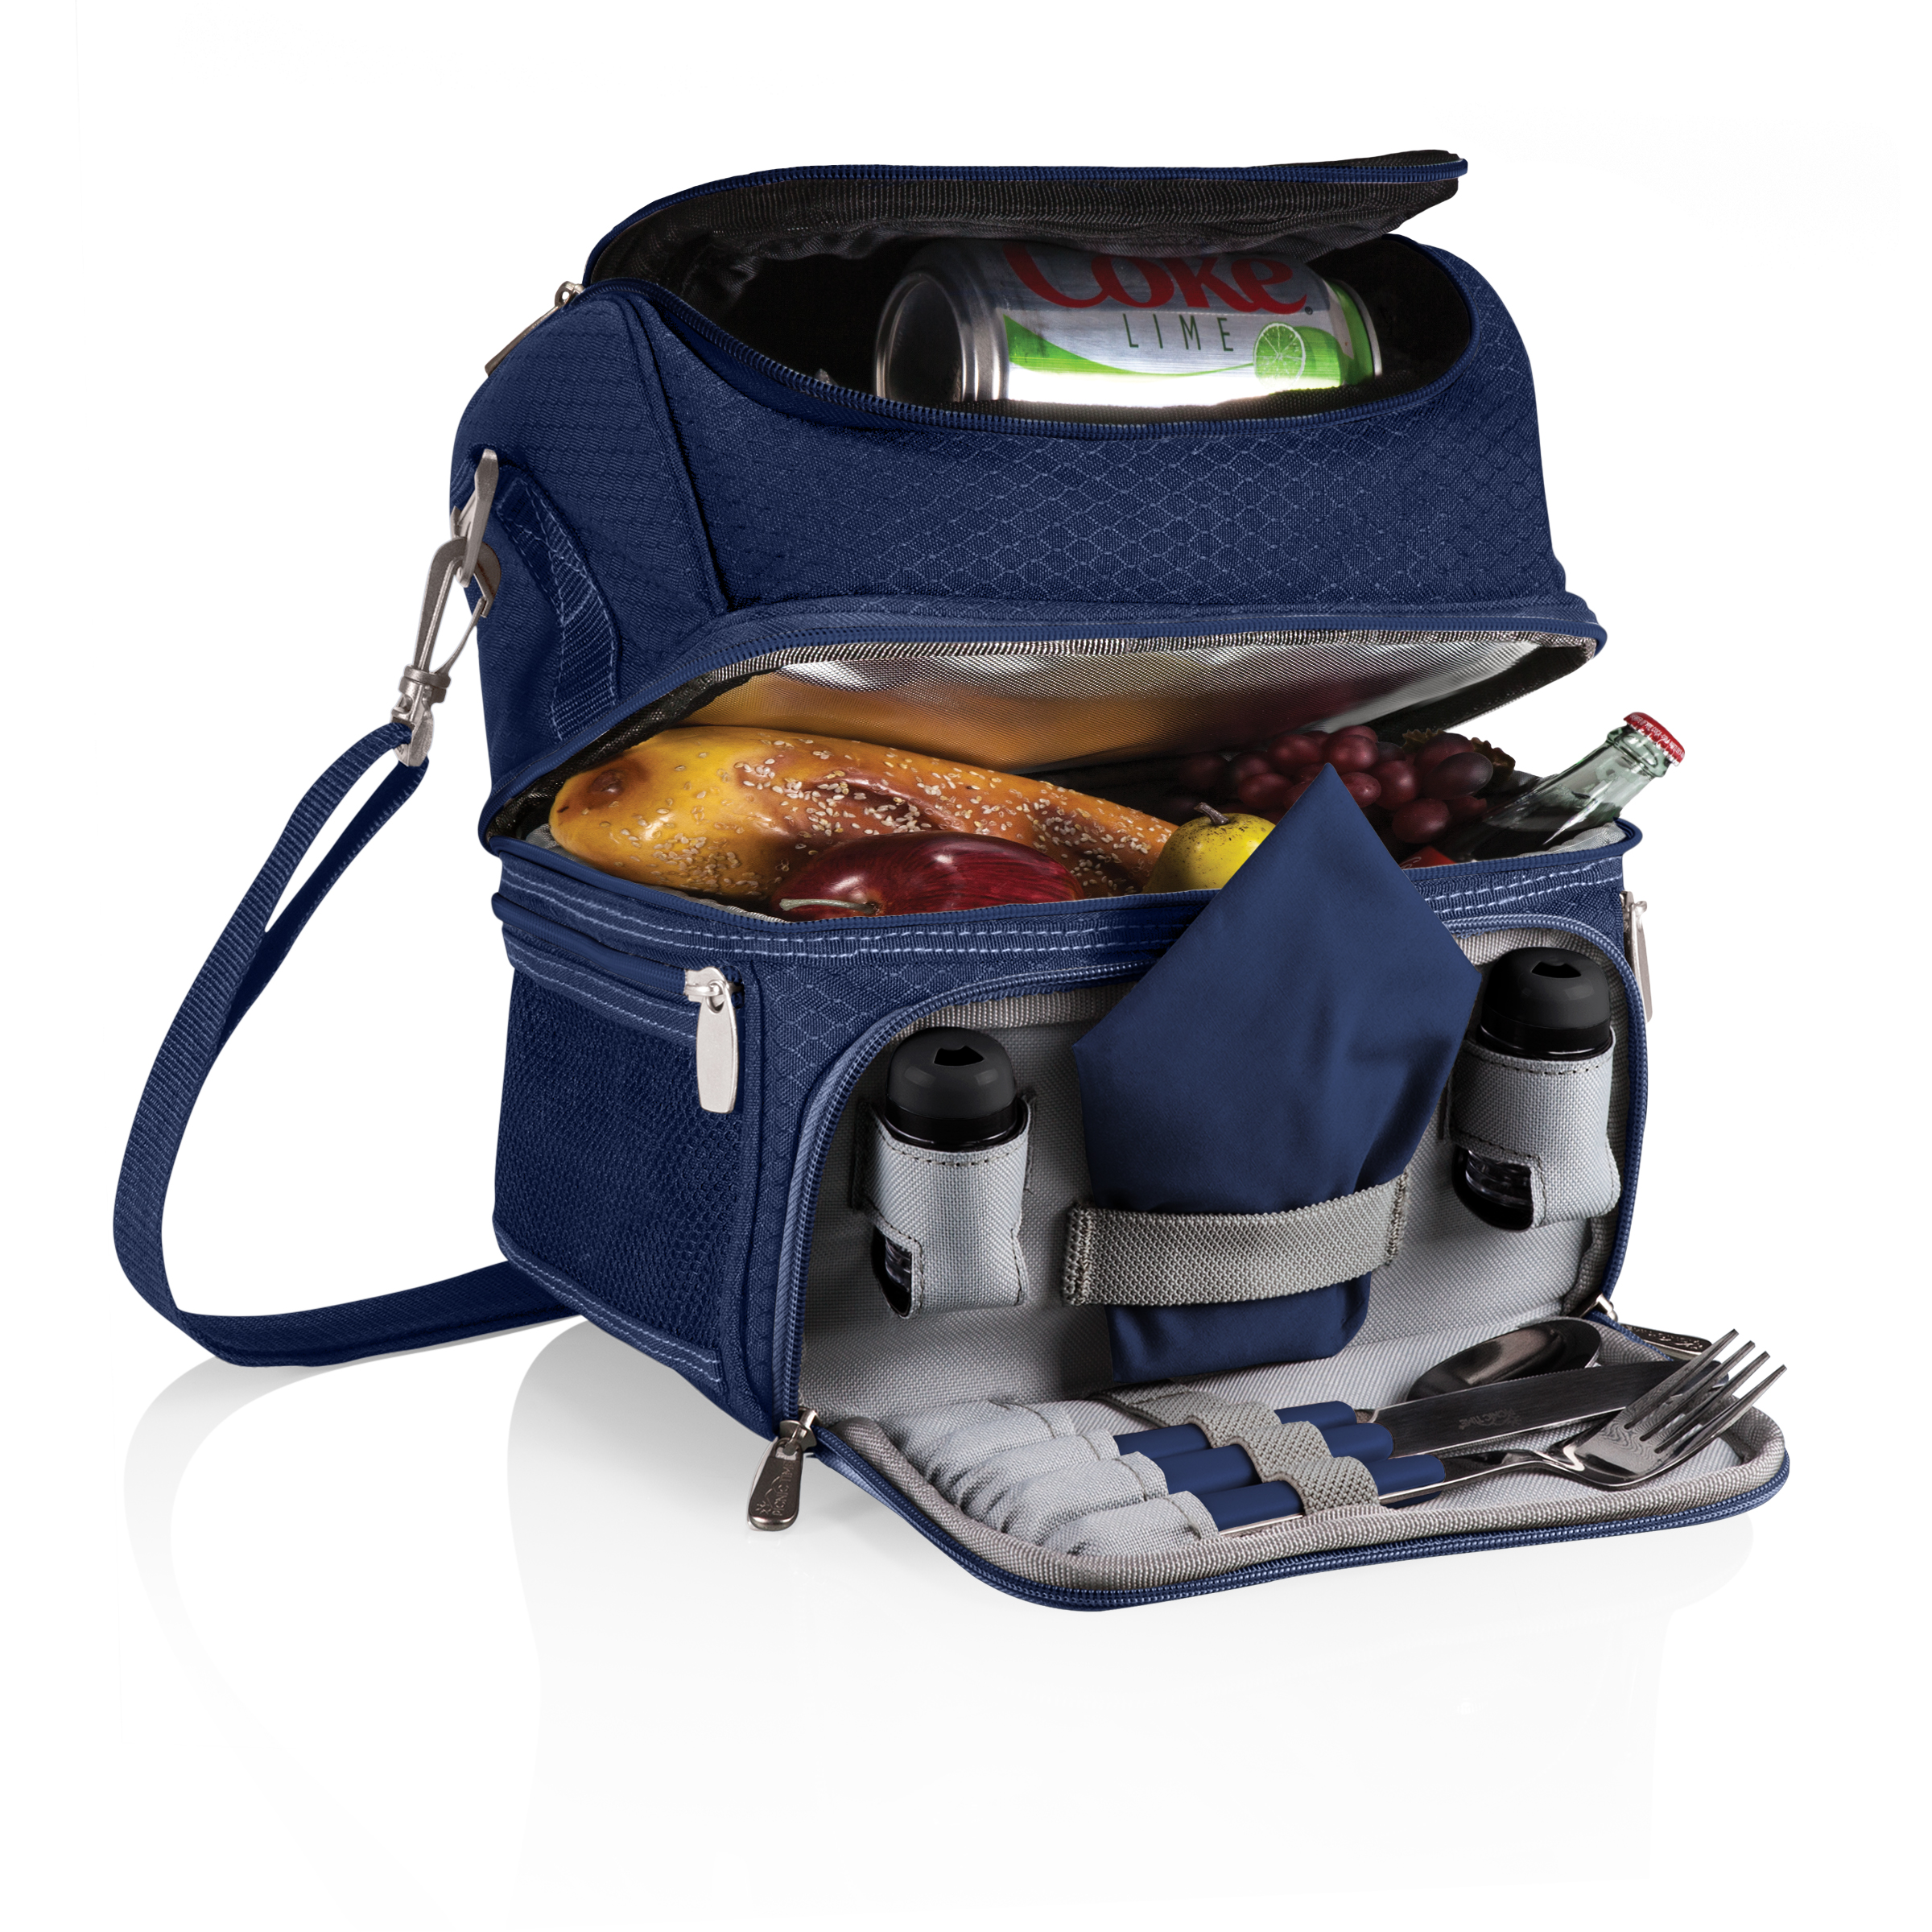 【美國Picnic Time】PRANZO 野餐露營兩用保溫保冷袋(藍)-附餐具及調味罐